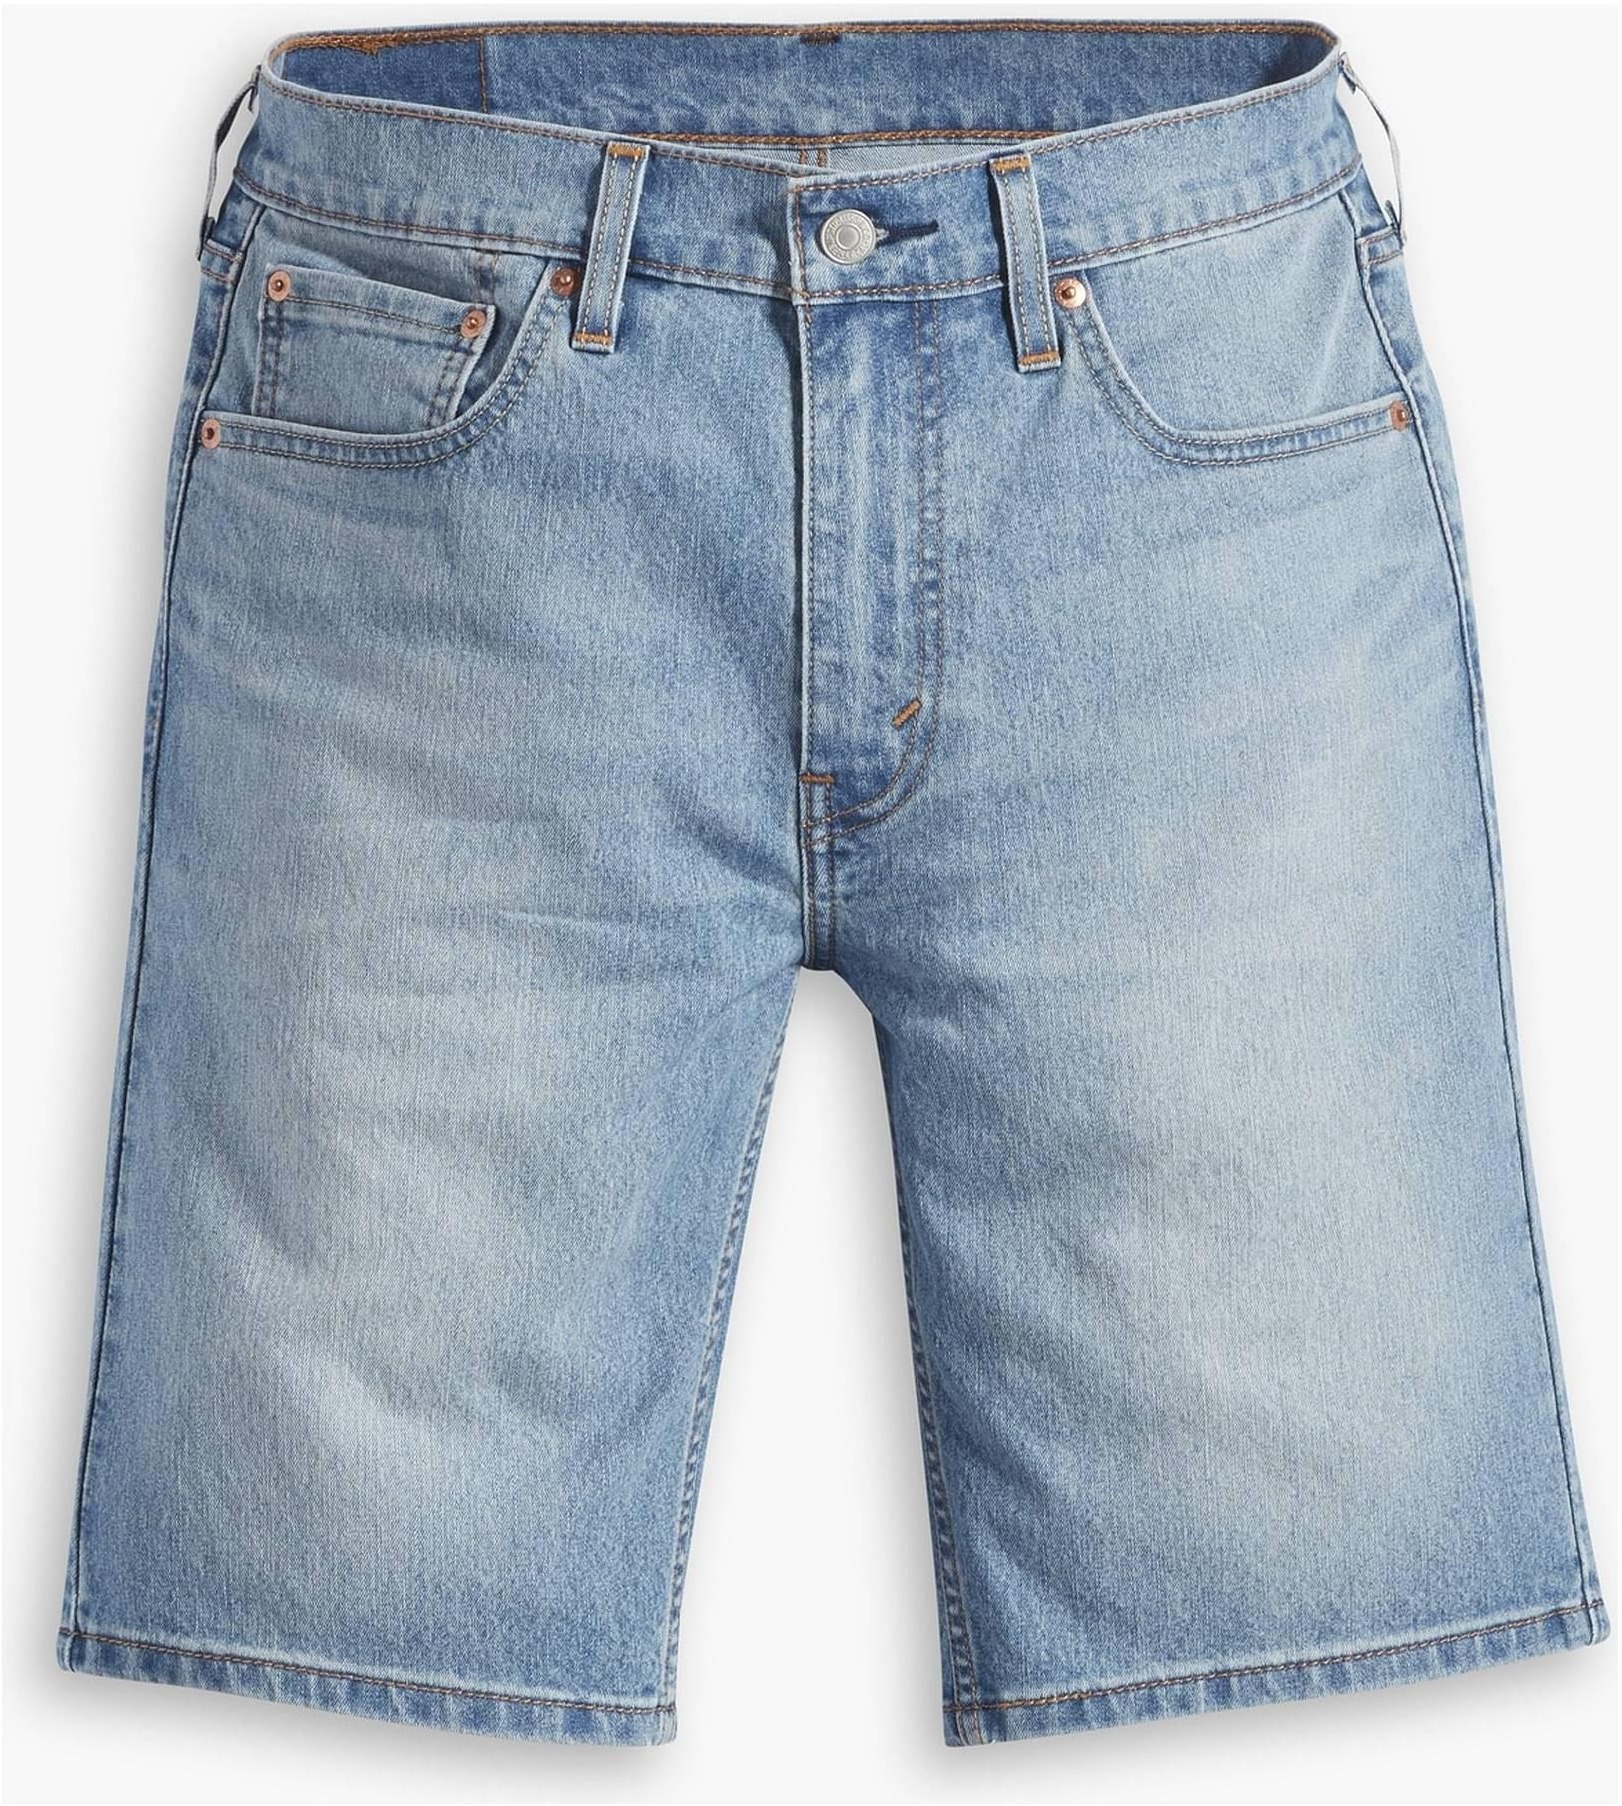 Джинсовые шорты мужские Levis Men 405 Standard Shorts синие 29